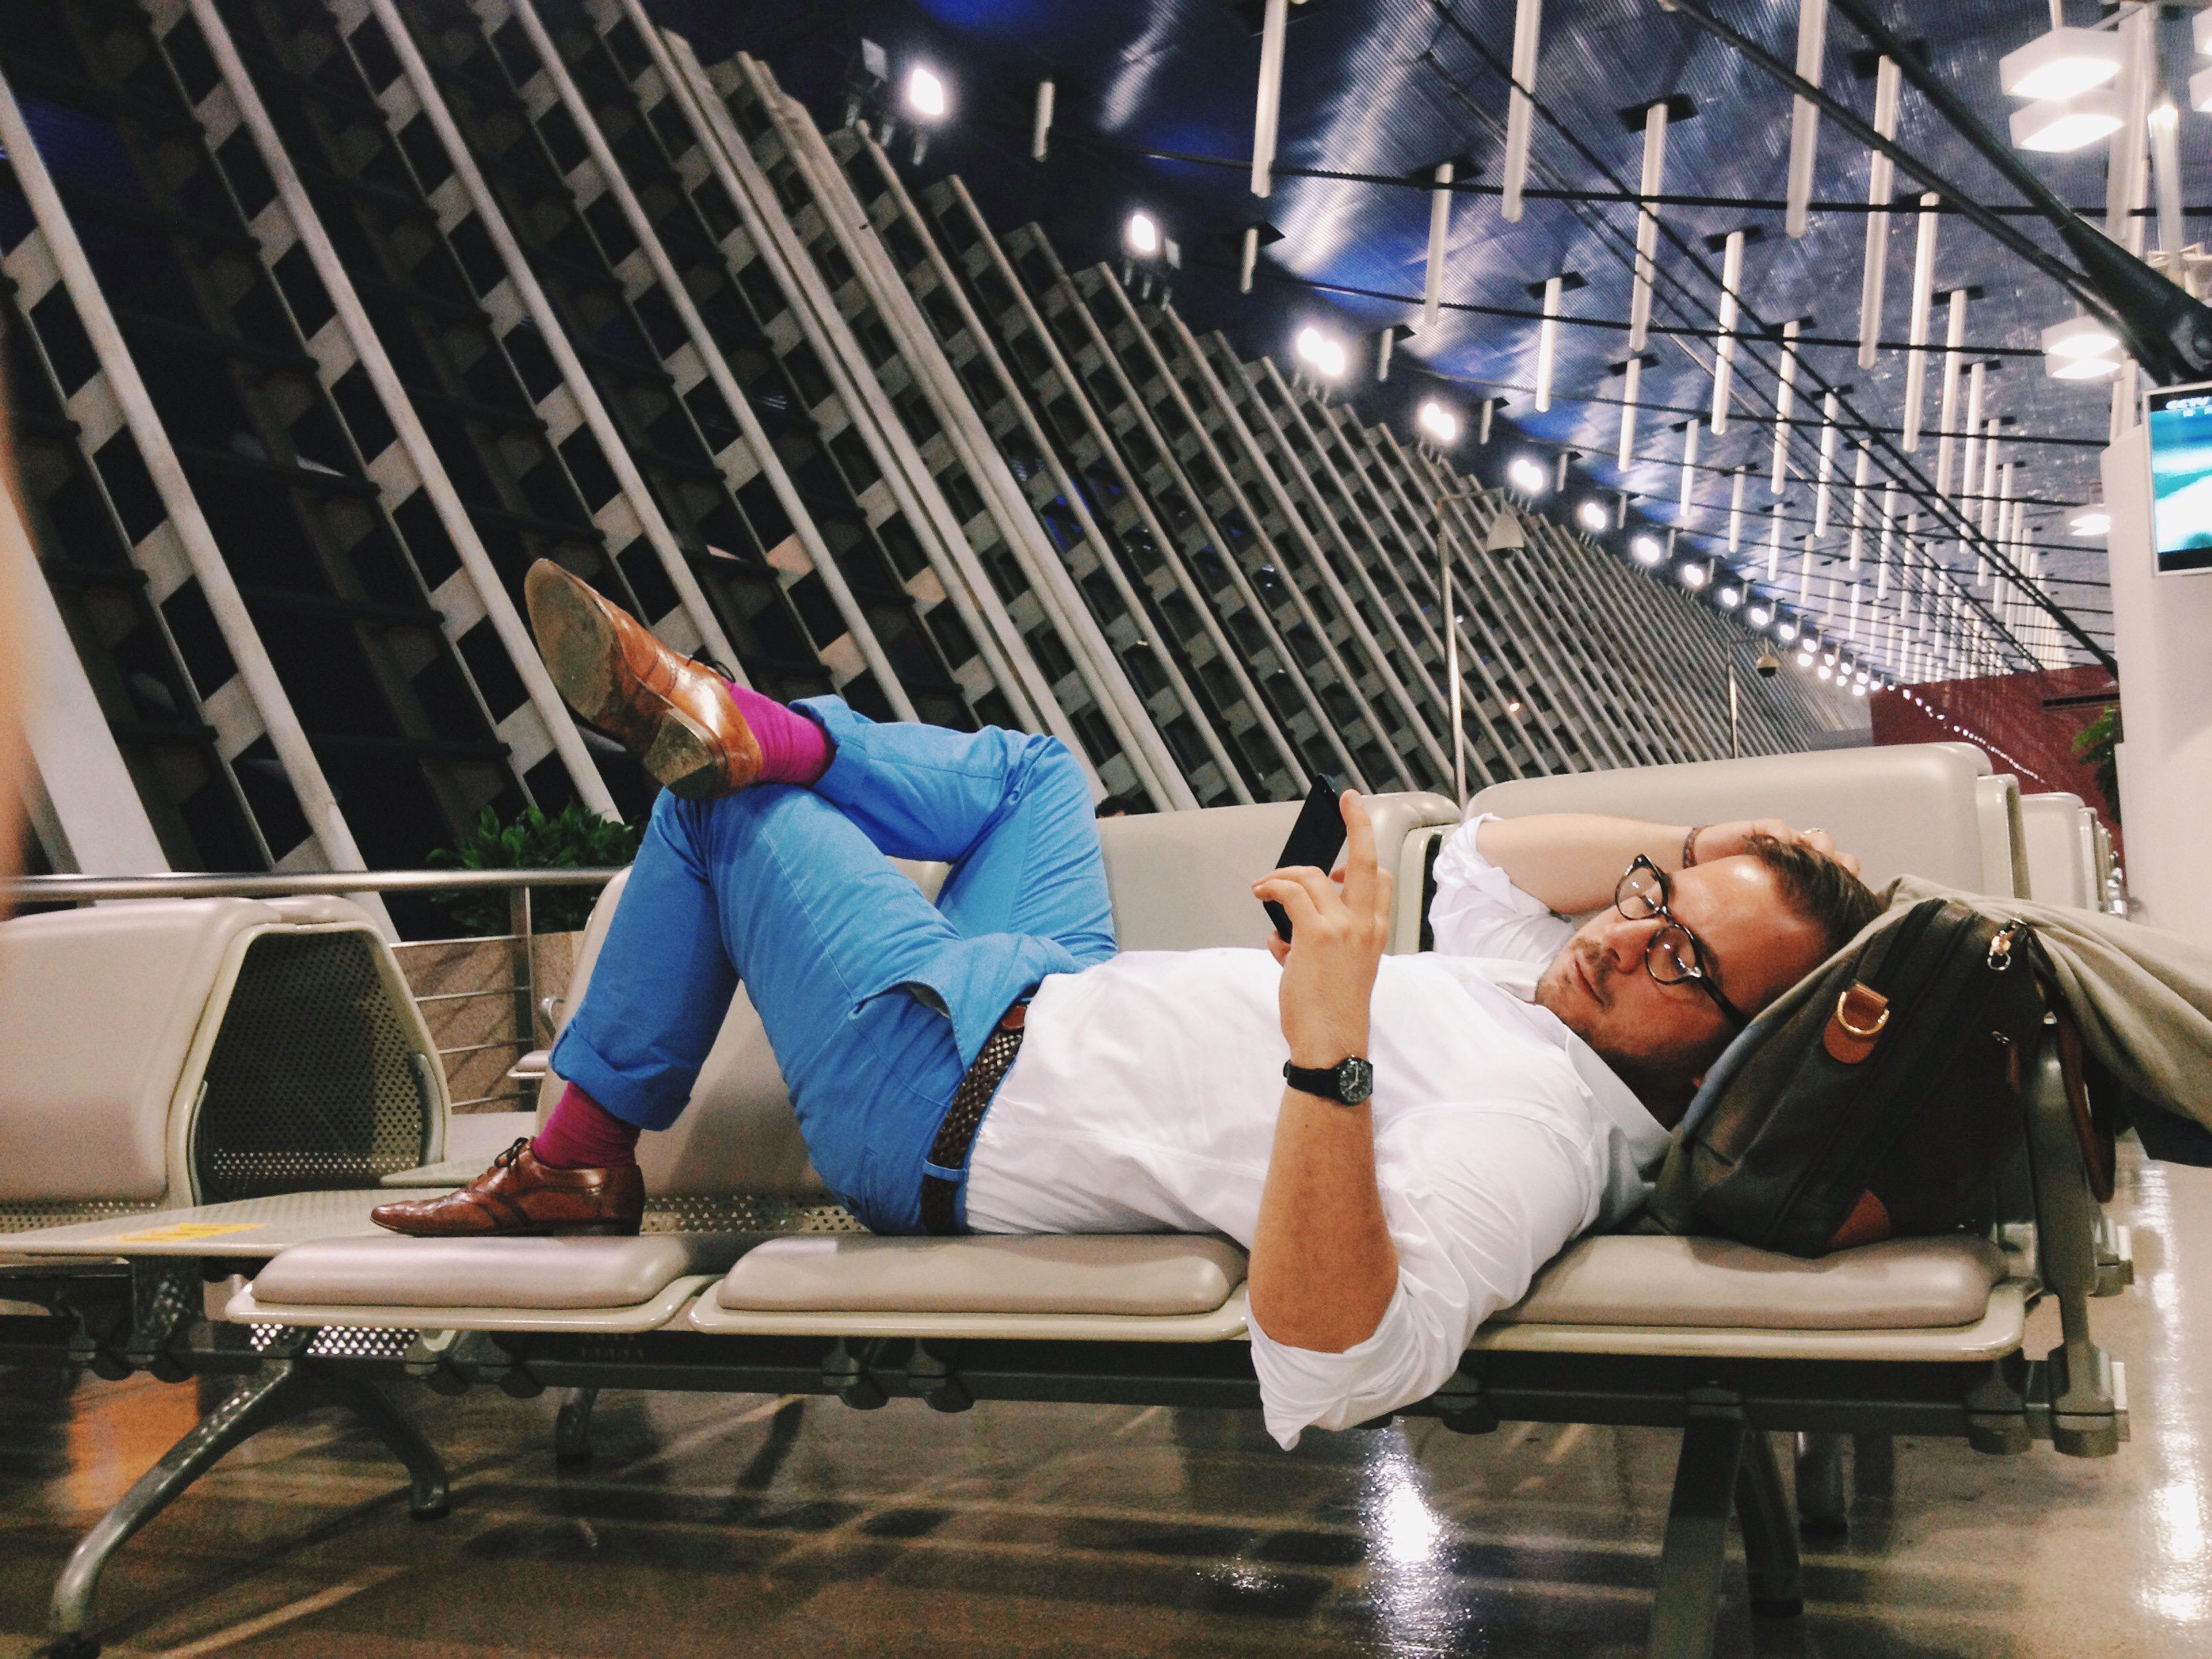 Muškarac u riflama, cipelama i bijelom košuljom leži preko tri stolice na aerodromskom terminalu i tipka na mobitel.